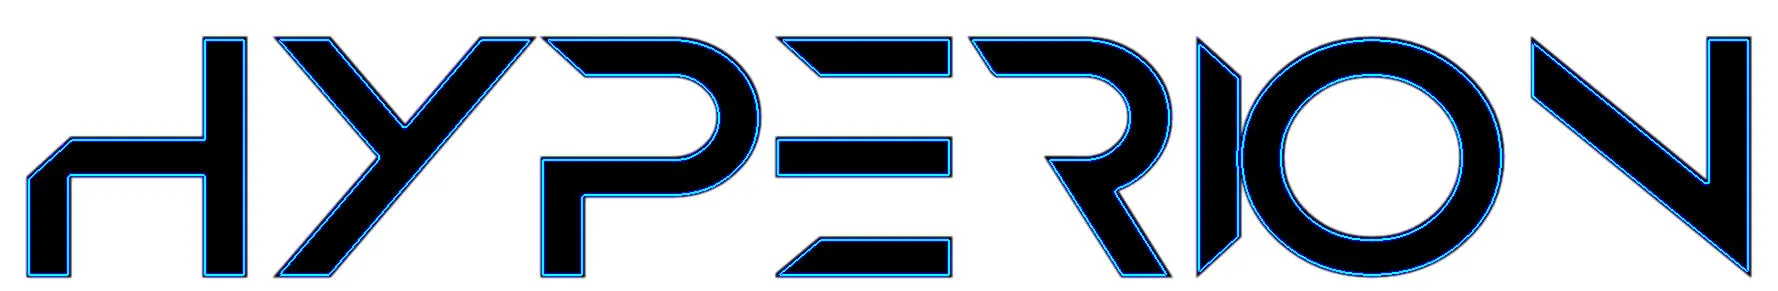 Hyperion Orbital logo